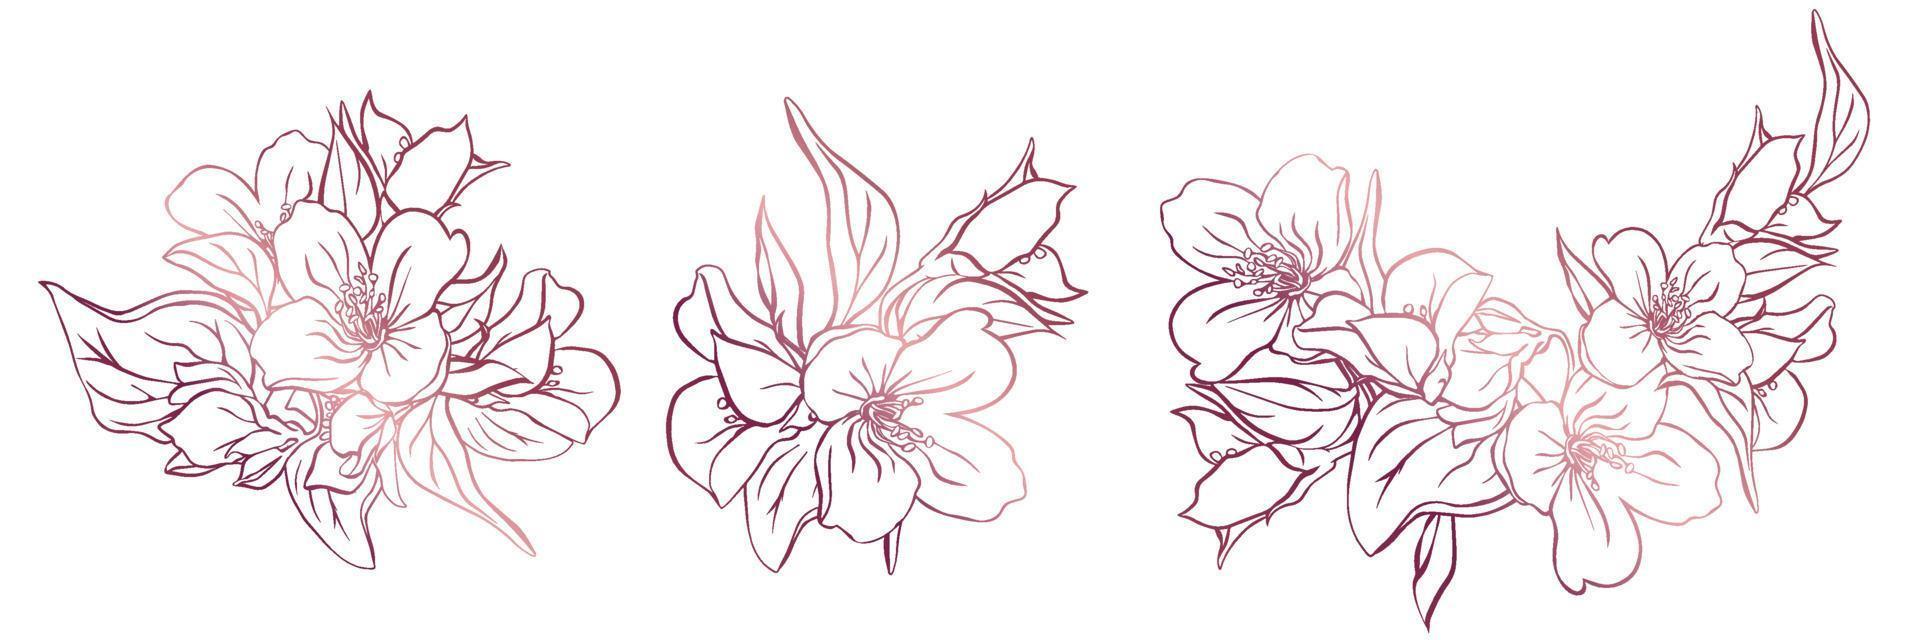 bezet met 3 bloeiende takjes jasmijn. contour van bloemen geïsoleerd van een witte achtergrond. vector